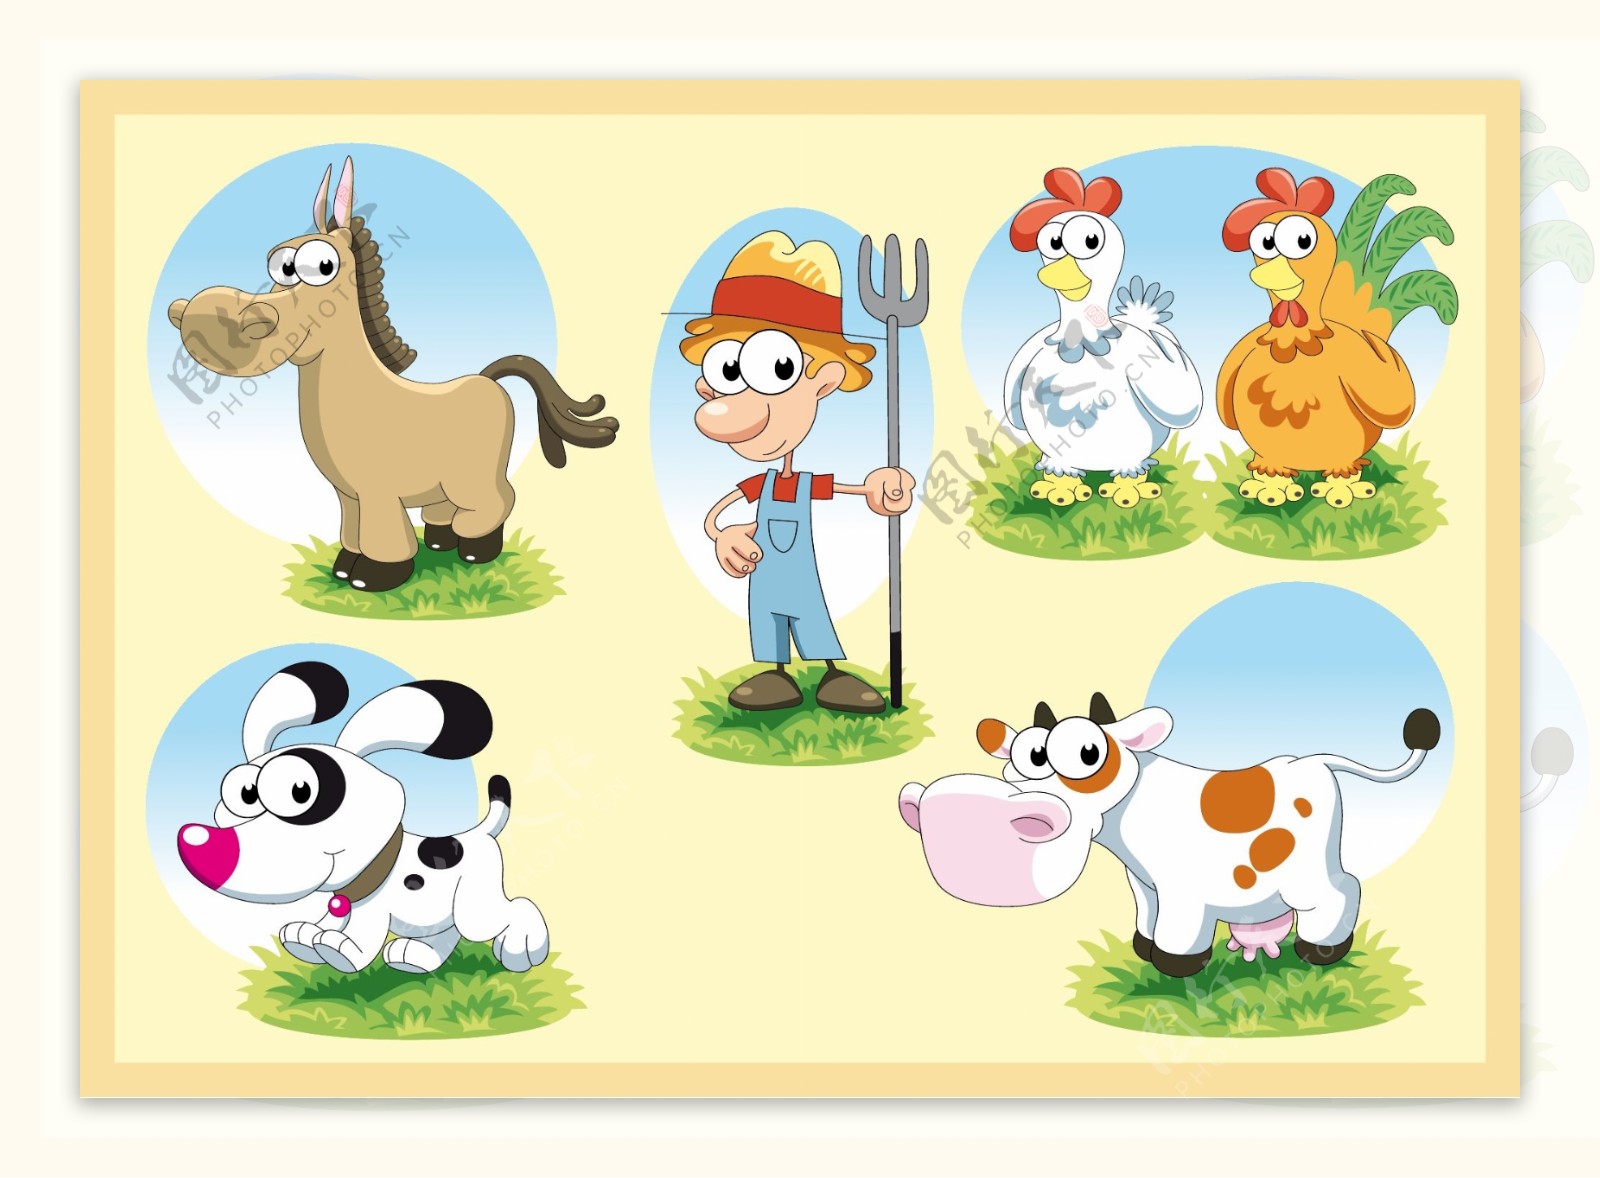 卡通农场人物和动物形象